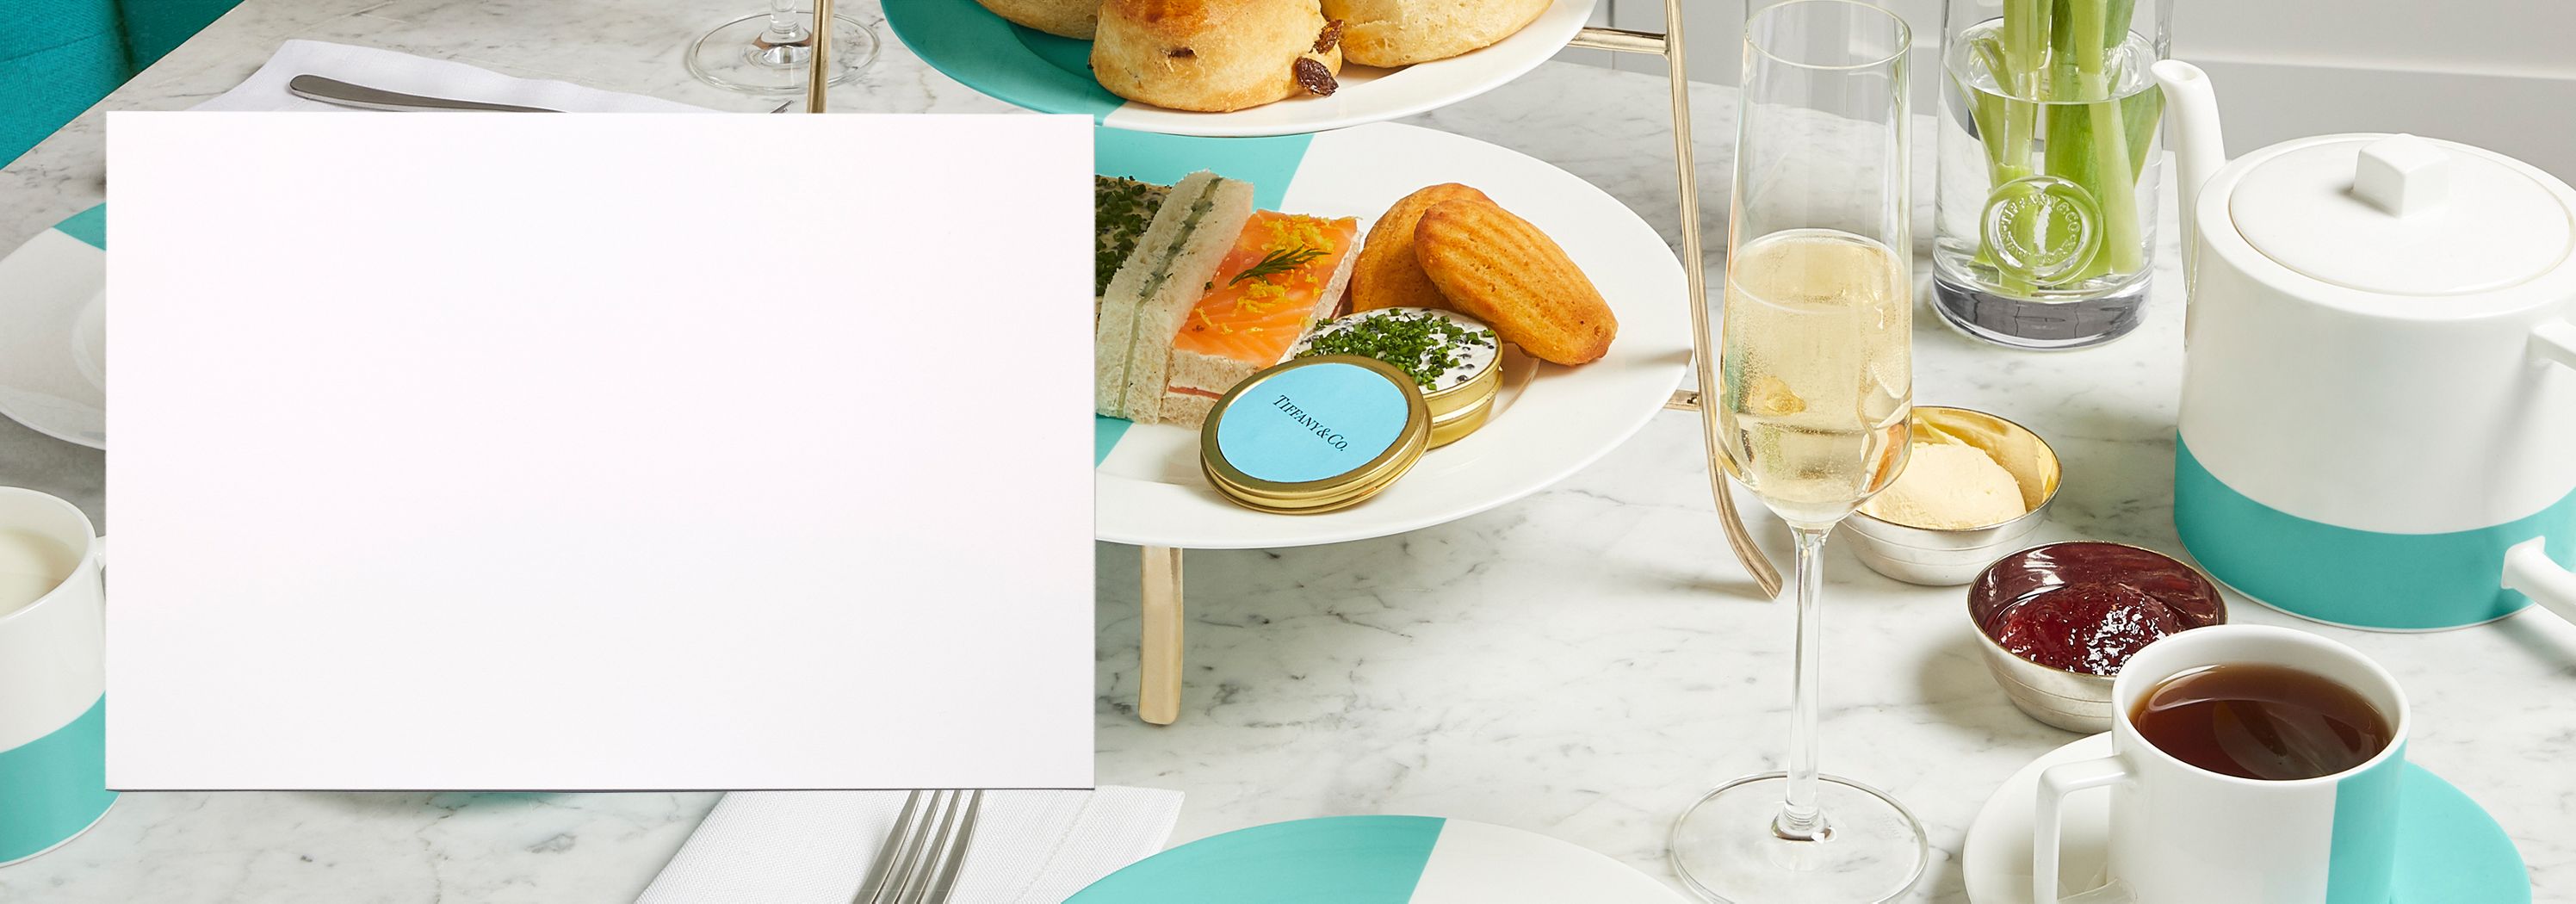 Breakfast At Tiffany's - Jeweler Tiffany & Co. Opens Blue Box Café